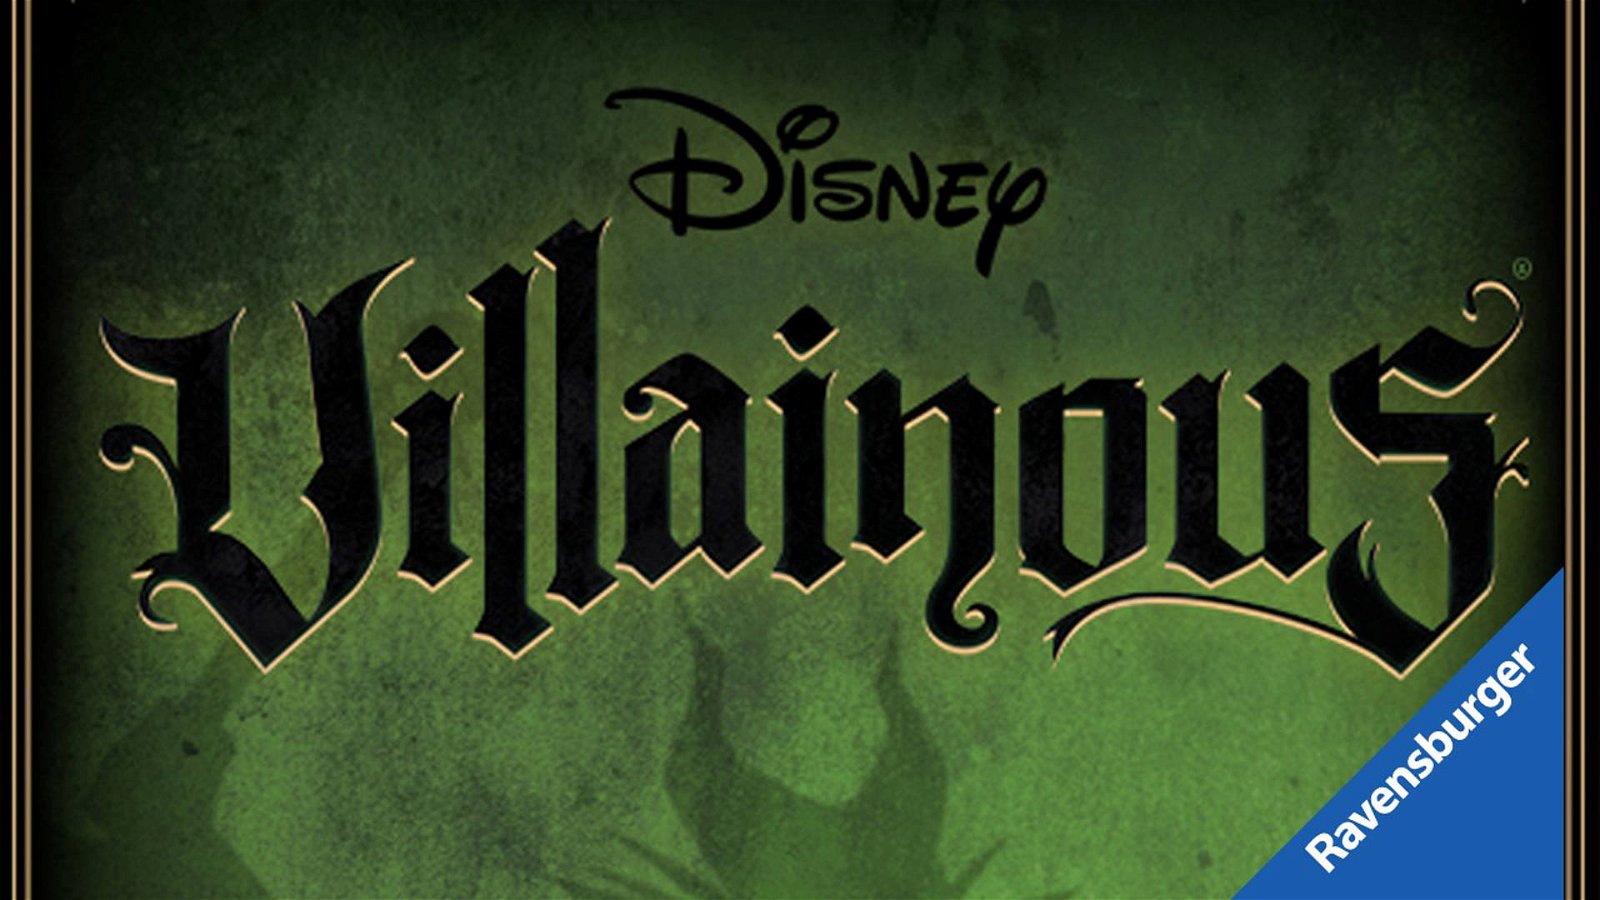 Immagine di Disney Villainous a Lucca Comics & Games 2019 con uno stand dedicato